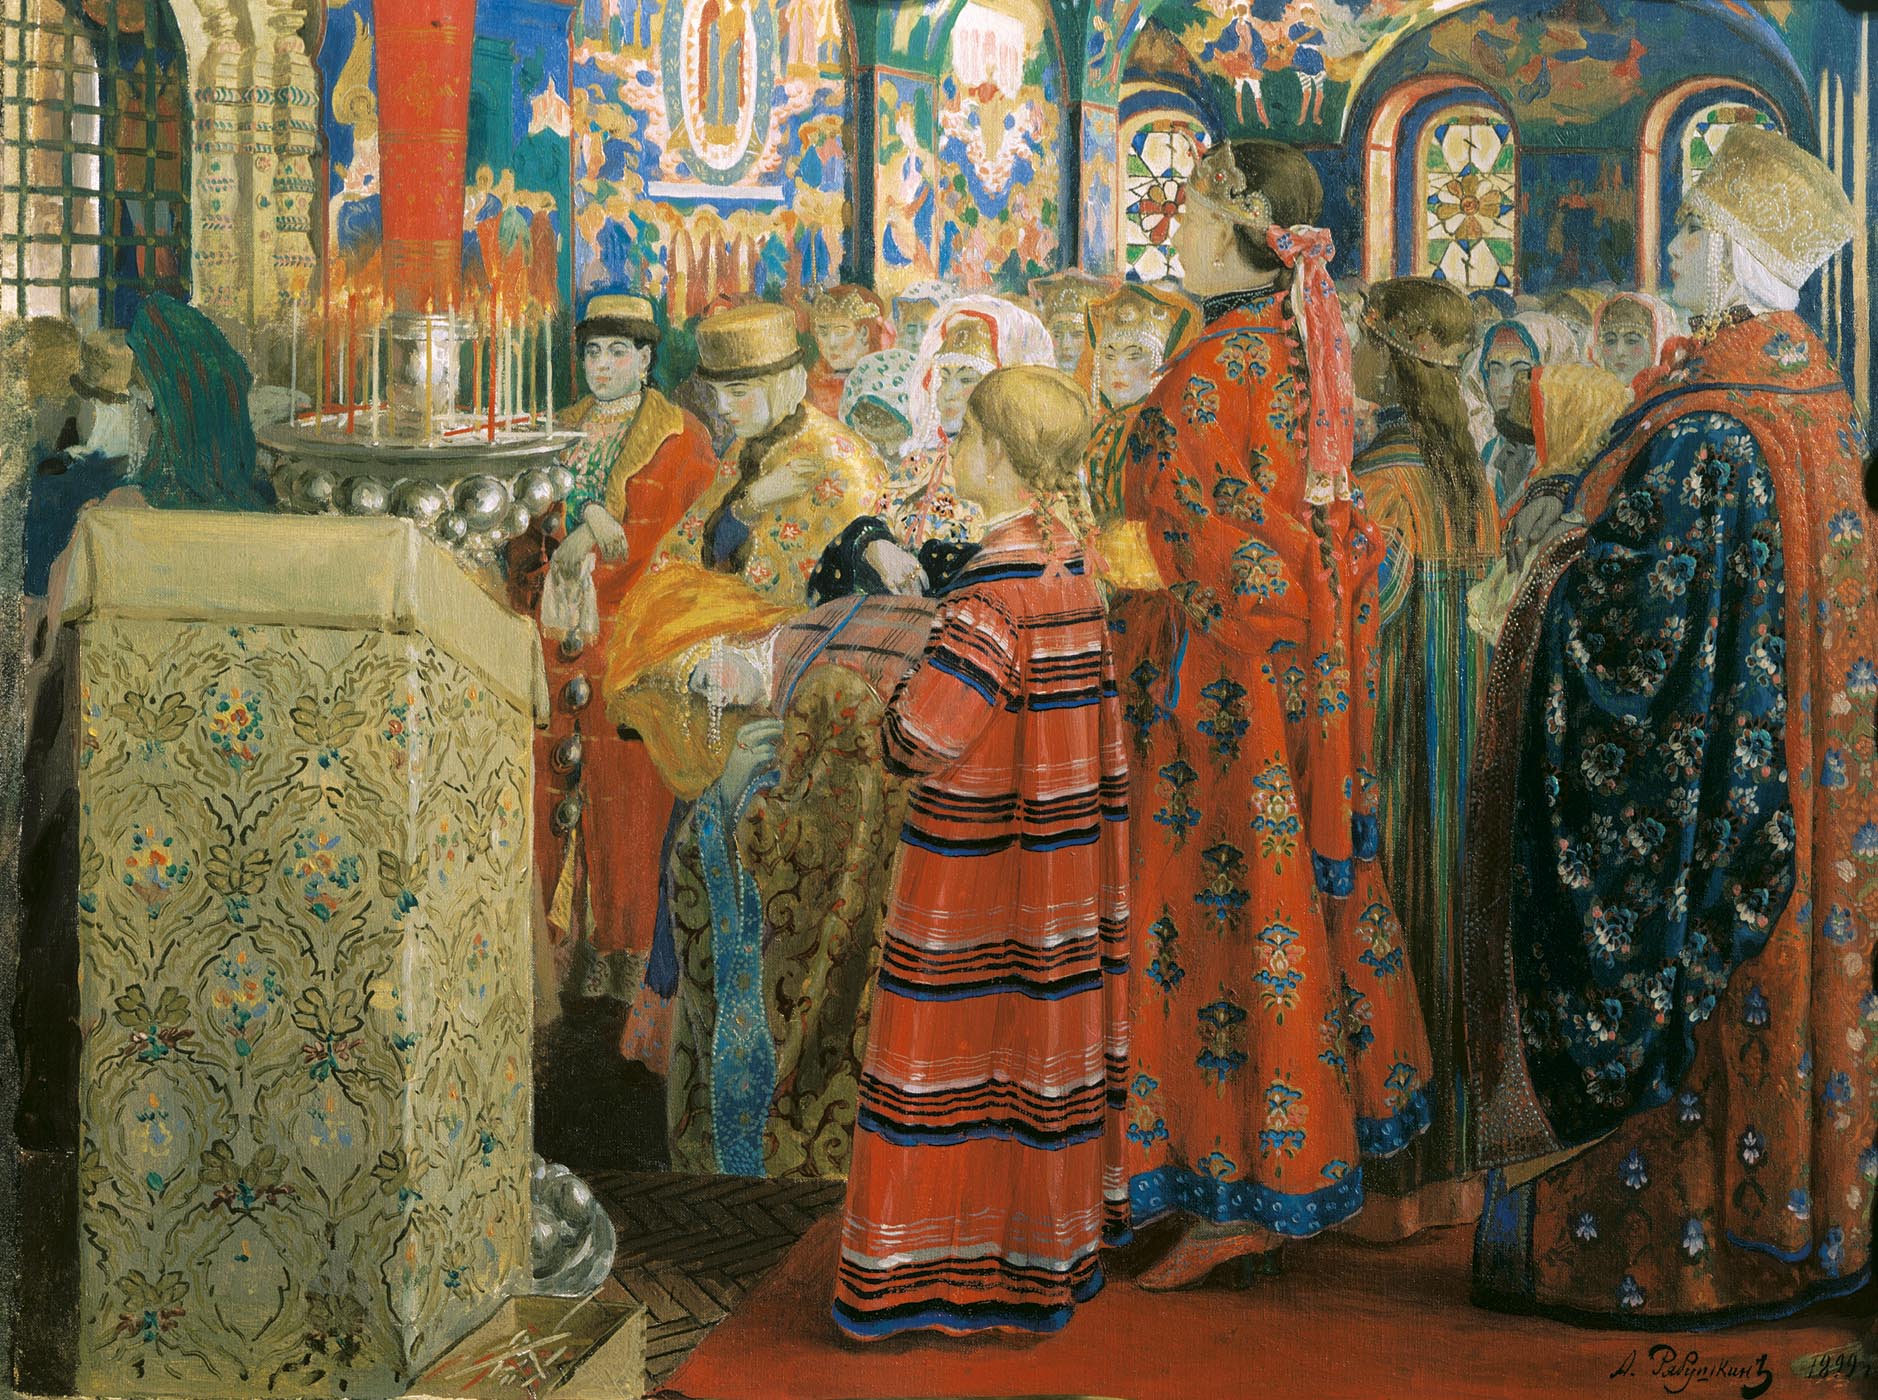 Андрей Рябушкин. "Русские женщины XVII столетия в церкви". 1899.